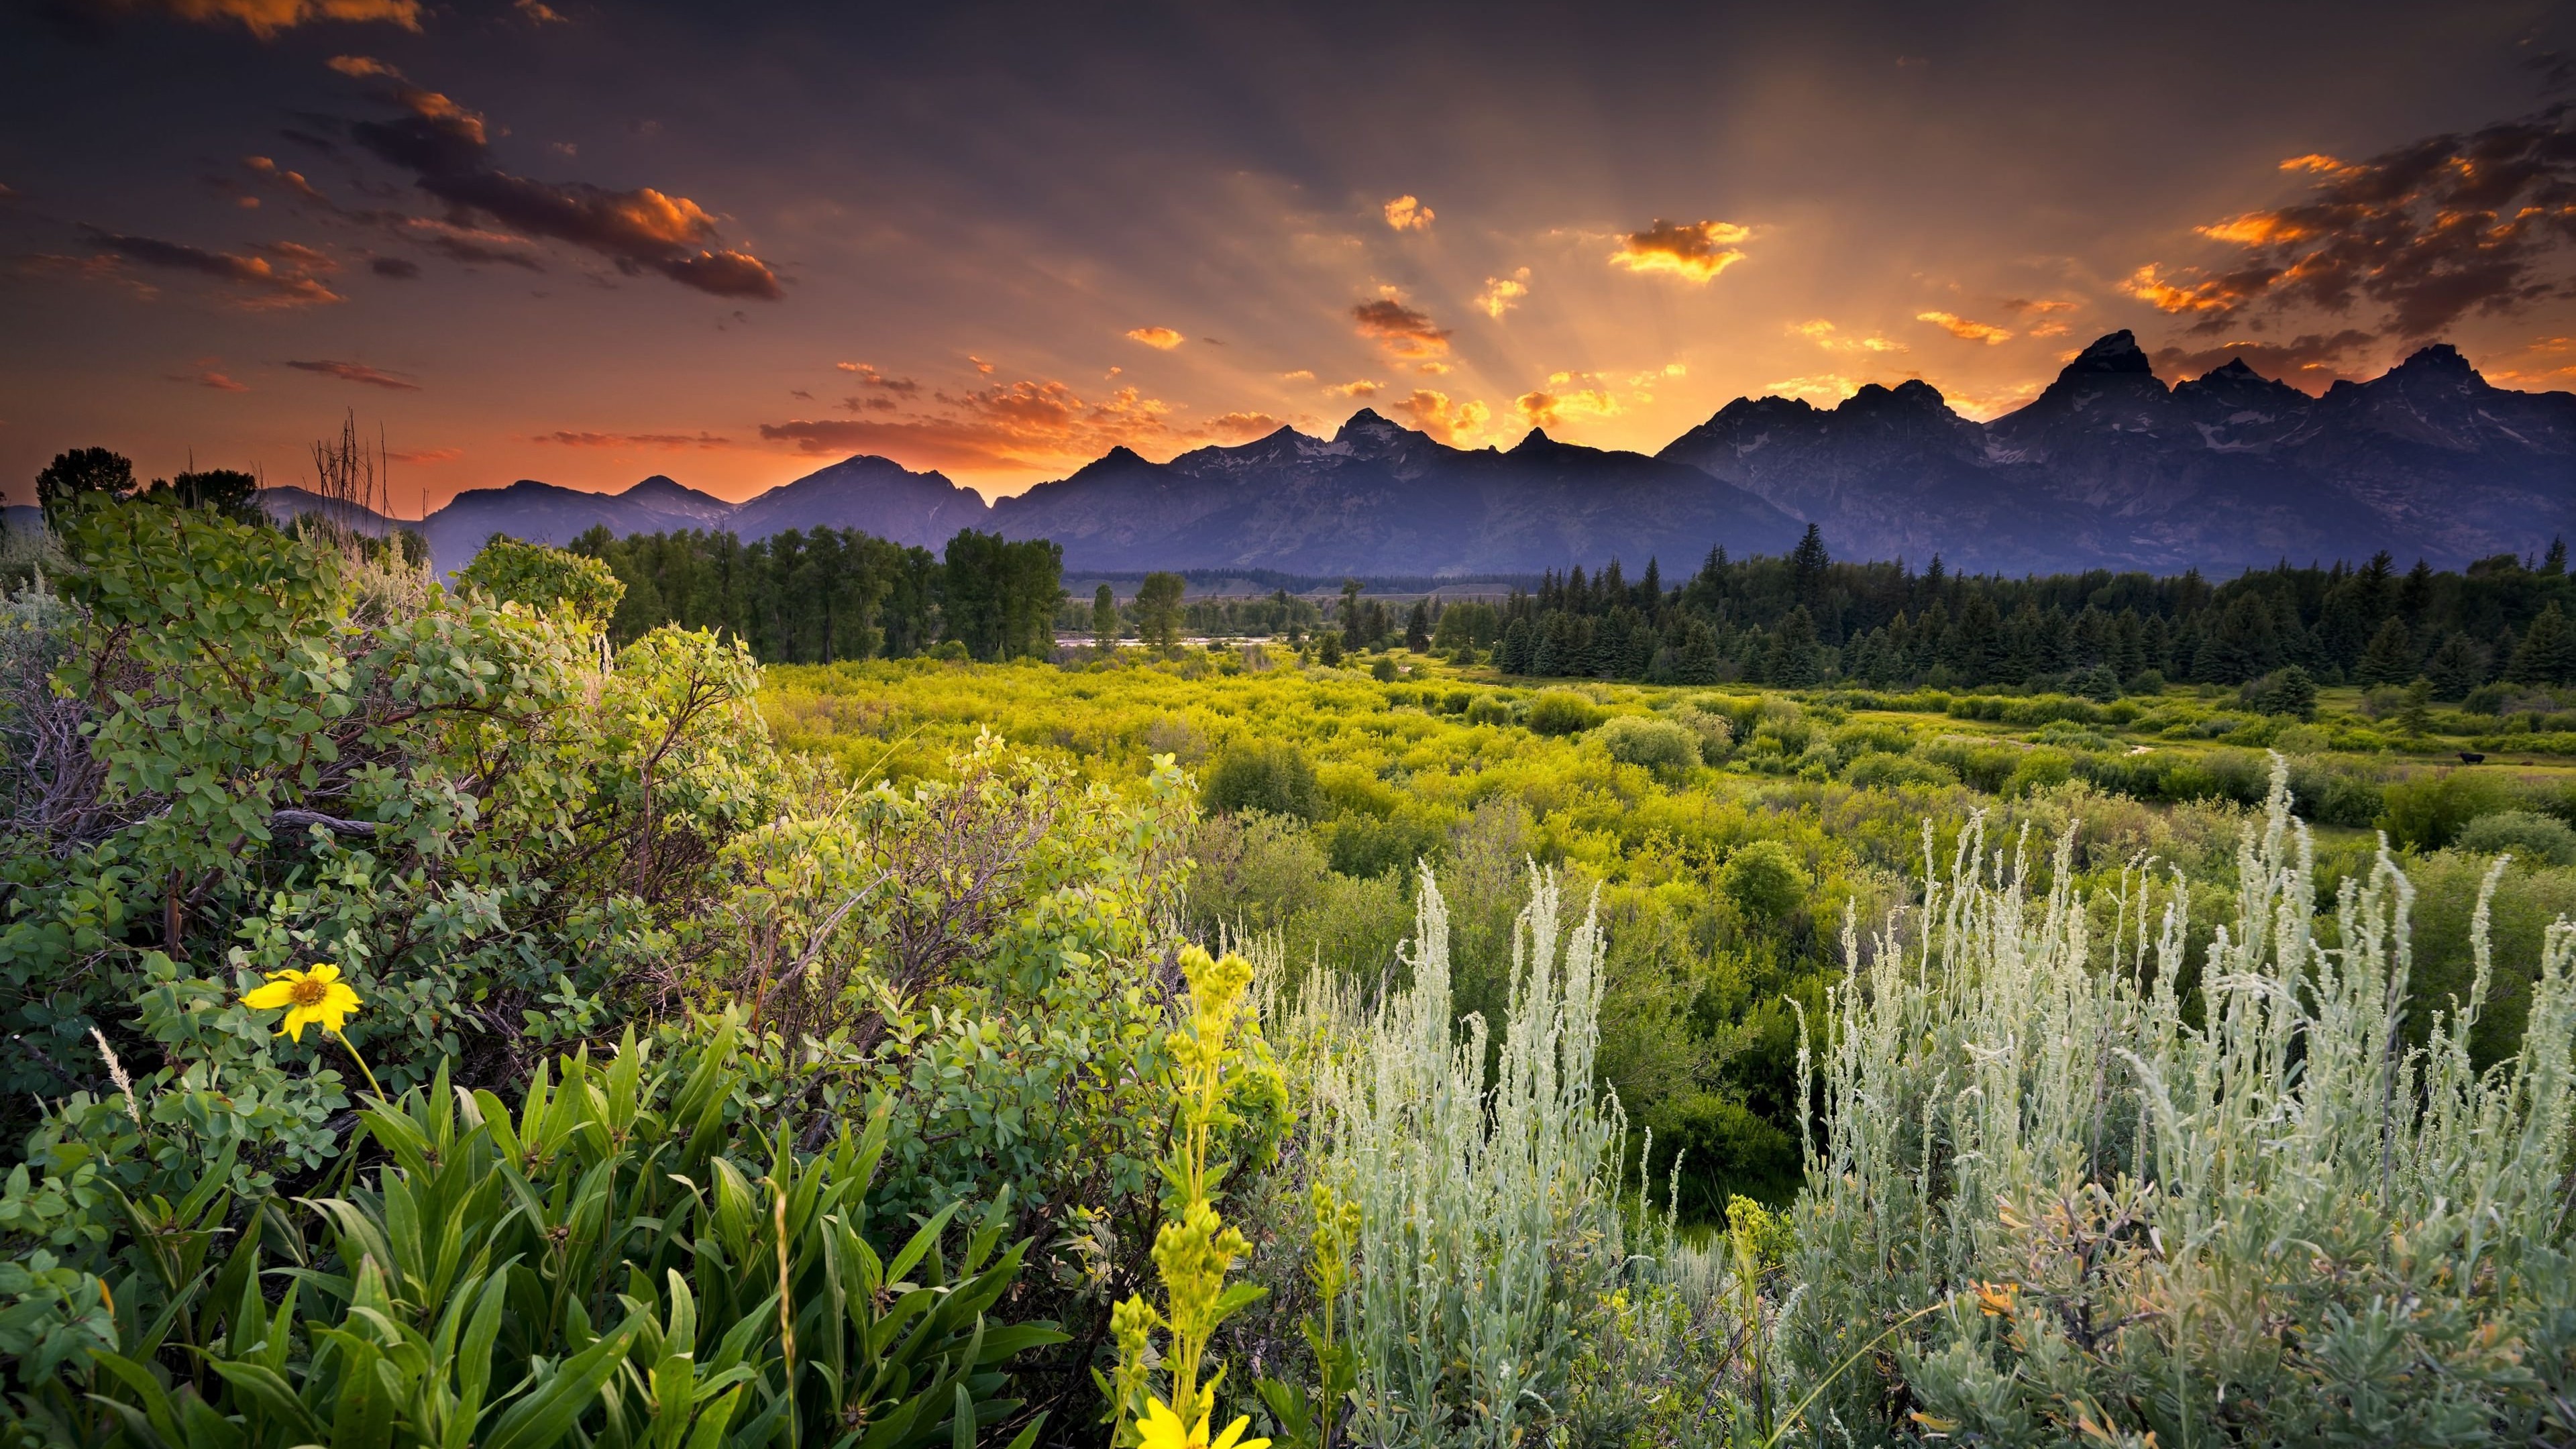 Sunset in Grand Teton National Park Wallpaper for Desktop 4K 3840x2160